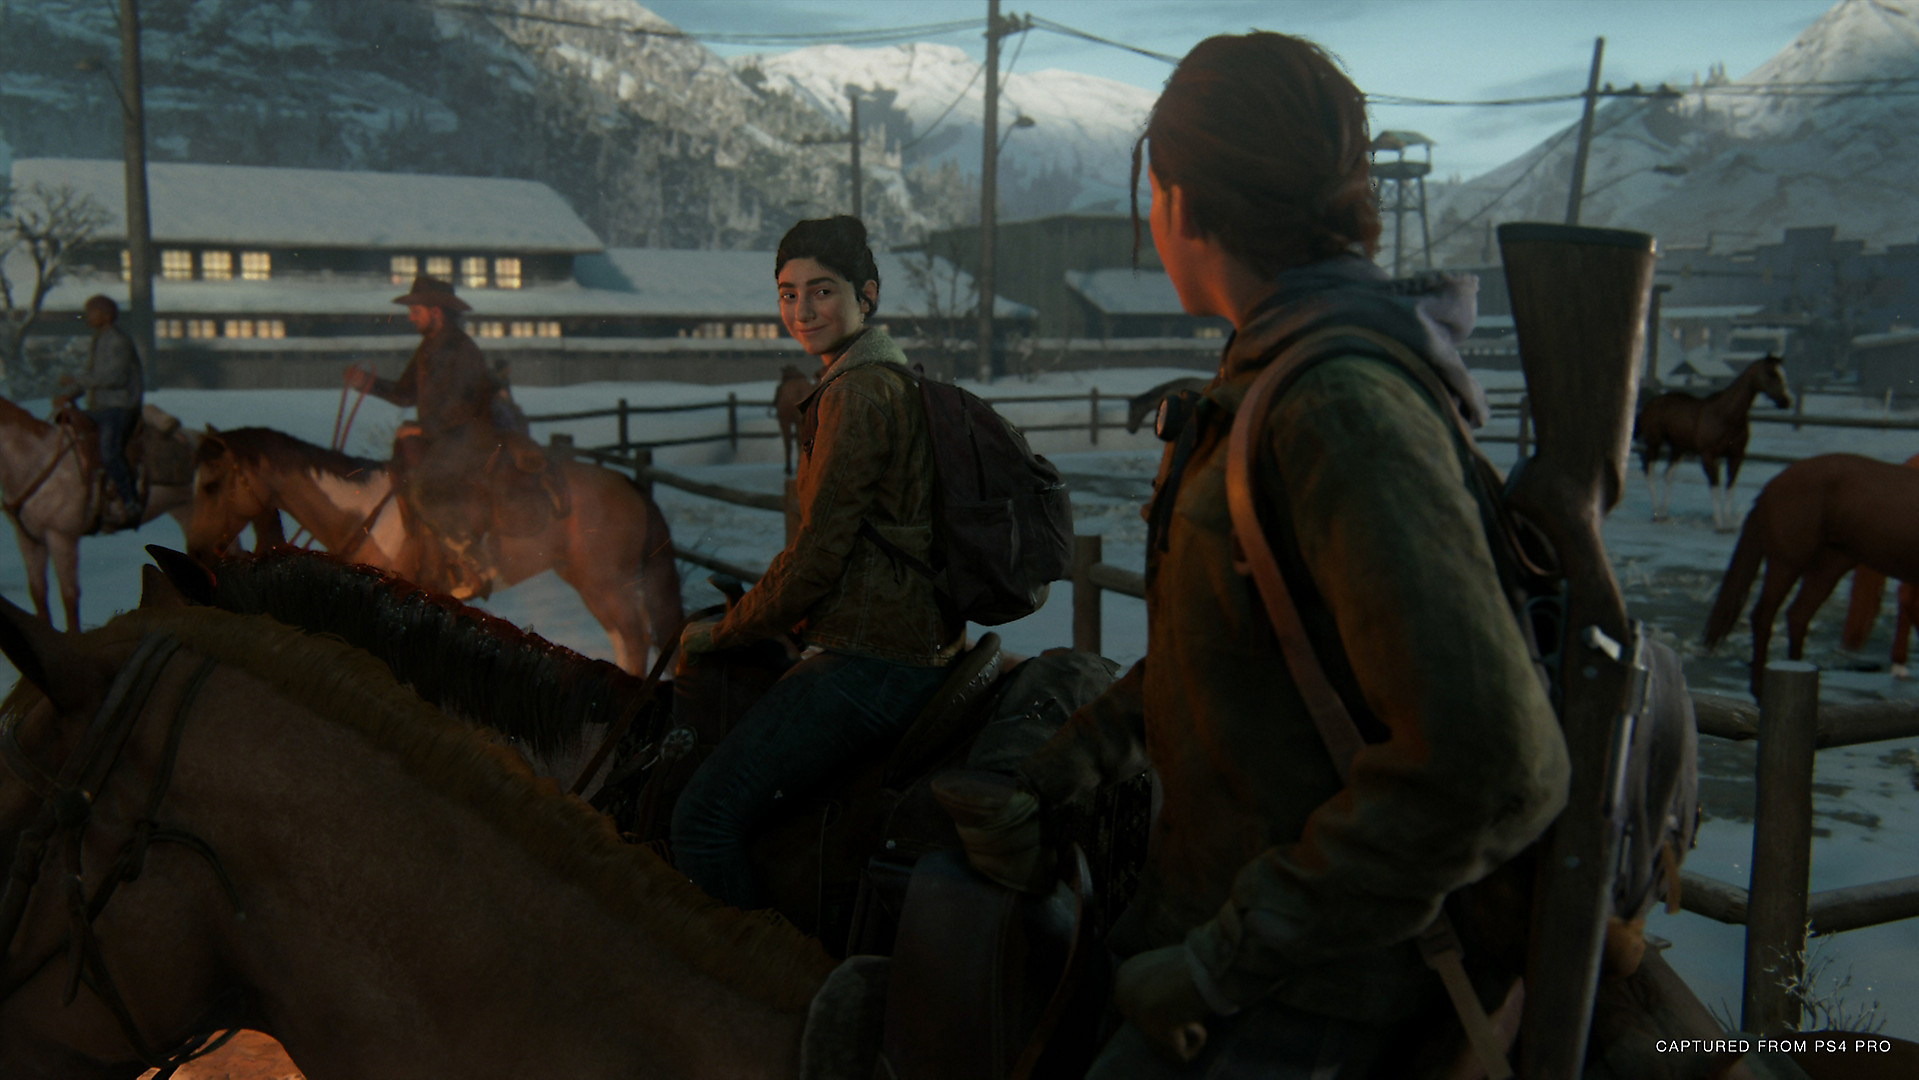 The Last of Us Part I é a quarta melhor estreia da Sony no PC